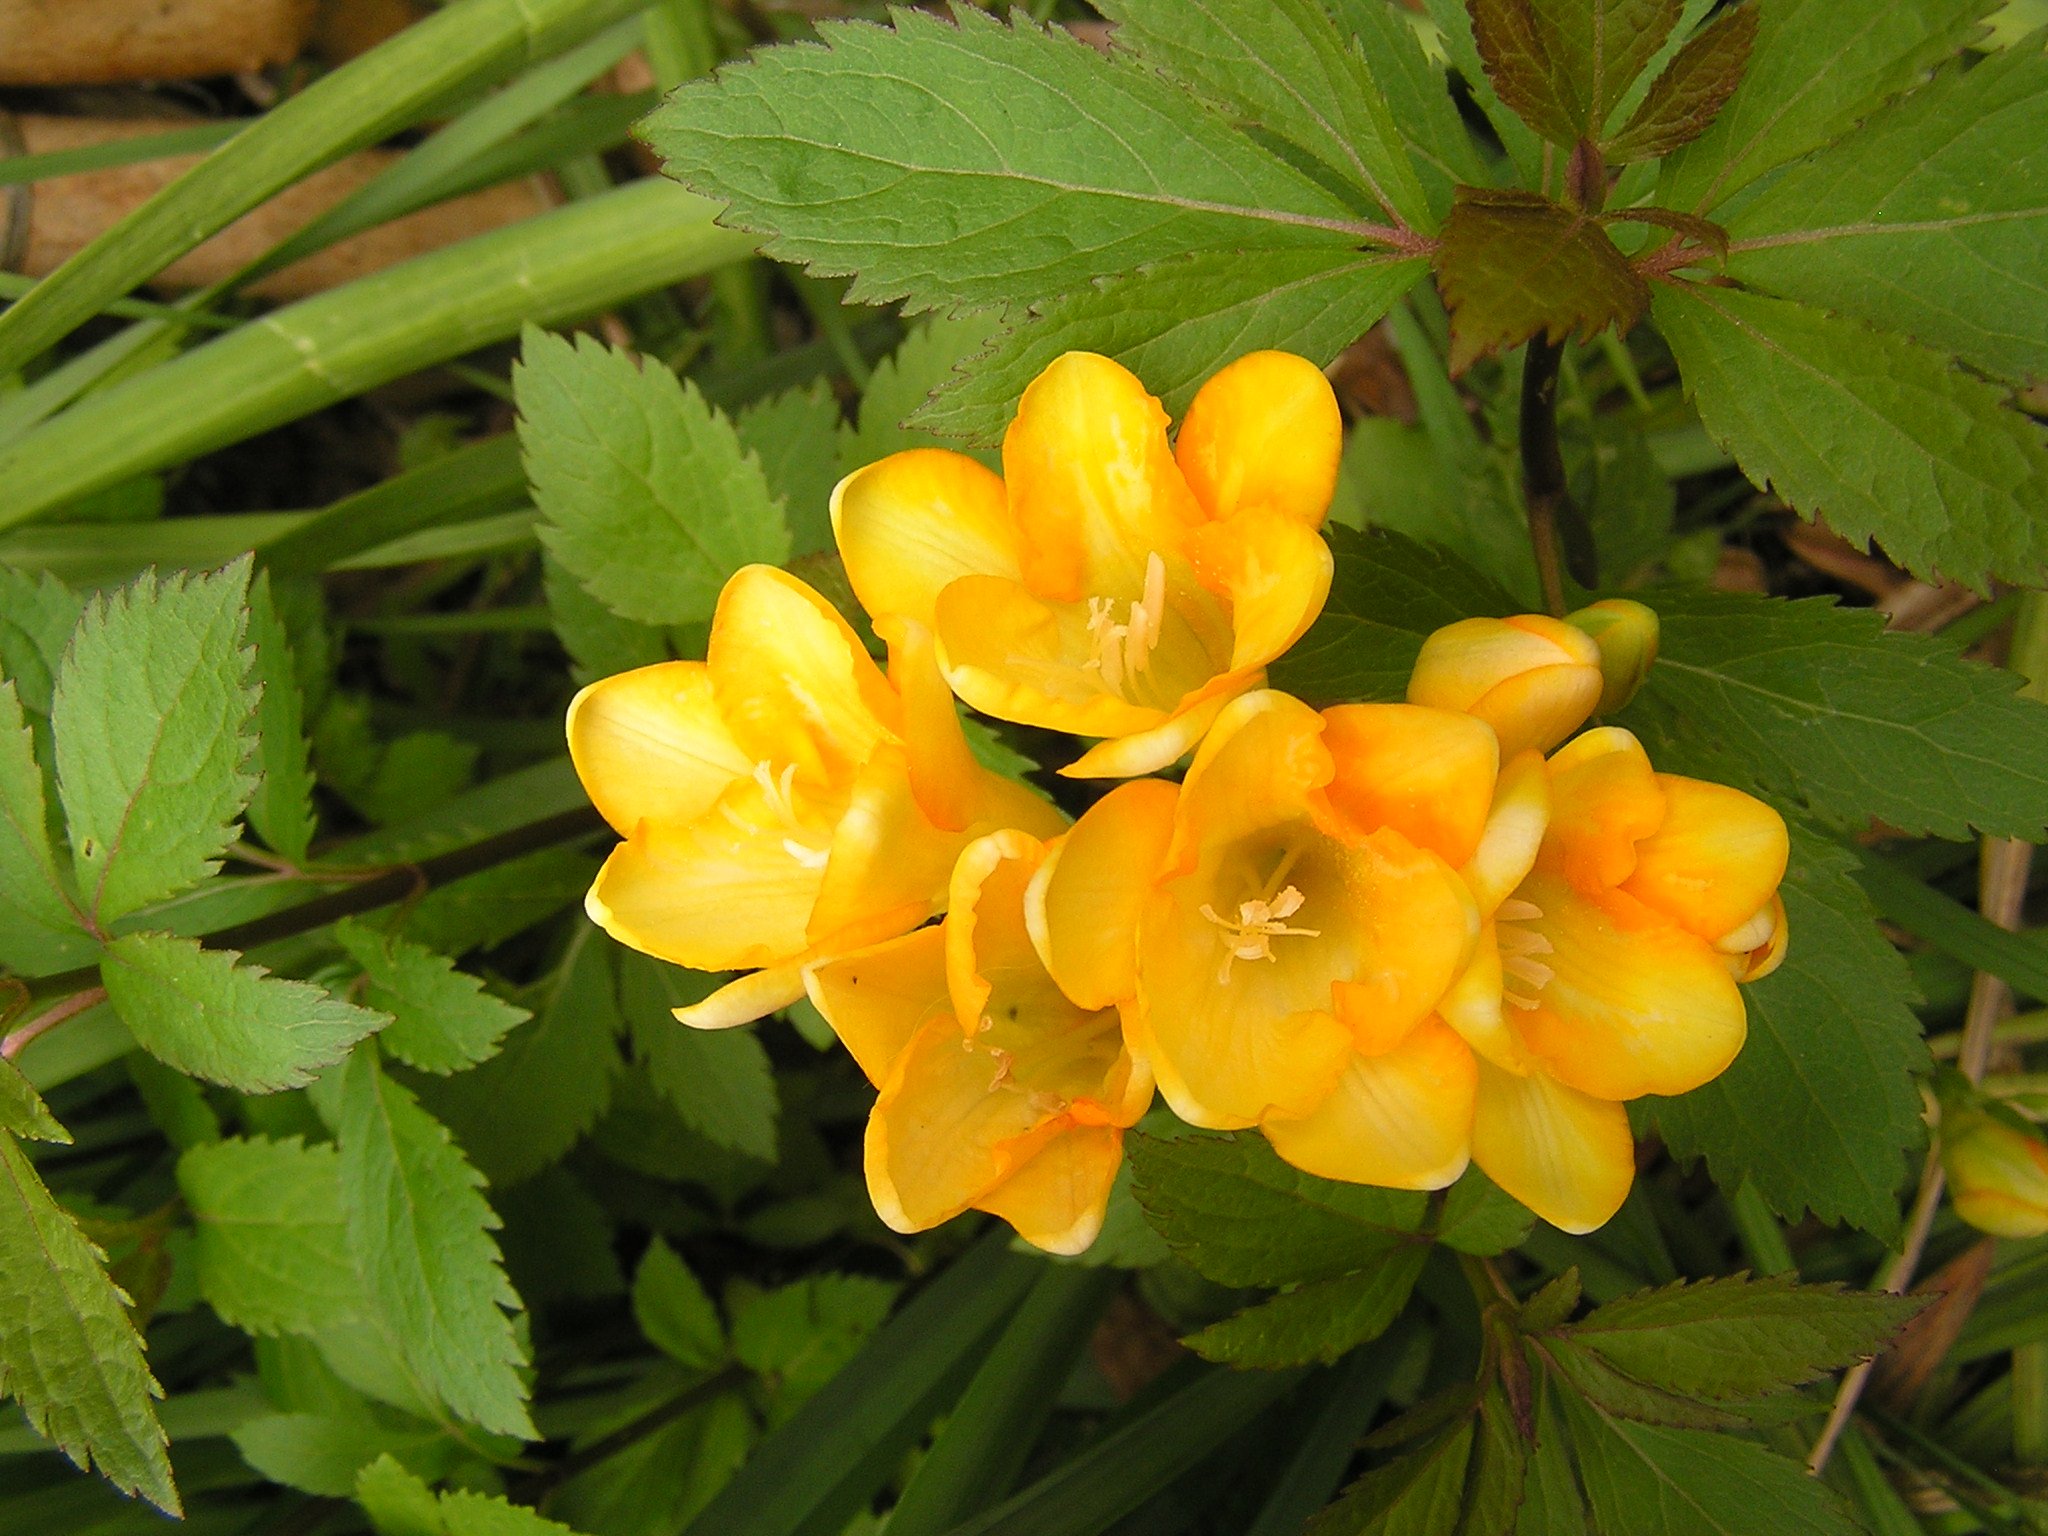 Flora 我が家の春の花 フリージア 黄色と白 お客様が見えて 香りが良いですねぇ と言って下さいますが いつも嗅いでいると匂いません どんな良い香りなのかな 春 花 フリージア Flower T Co Z3umisvbwk Twitter